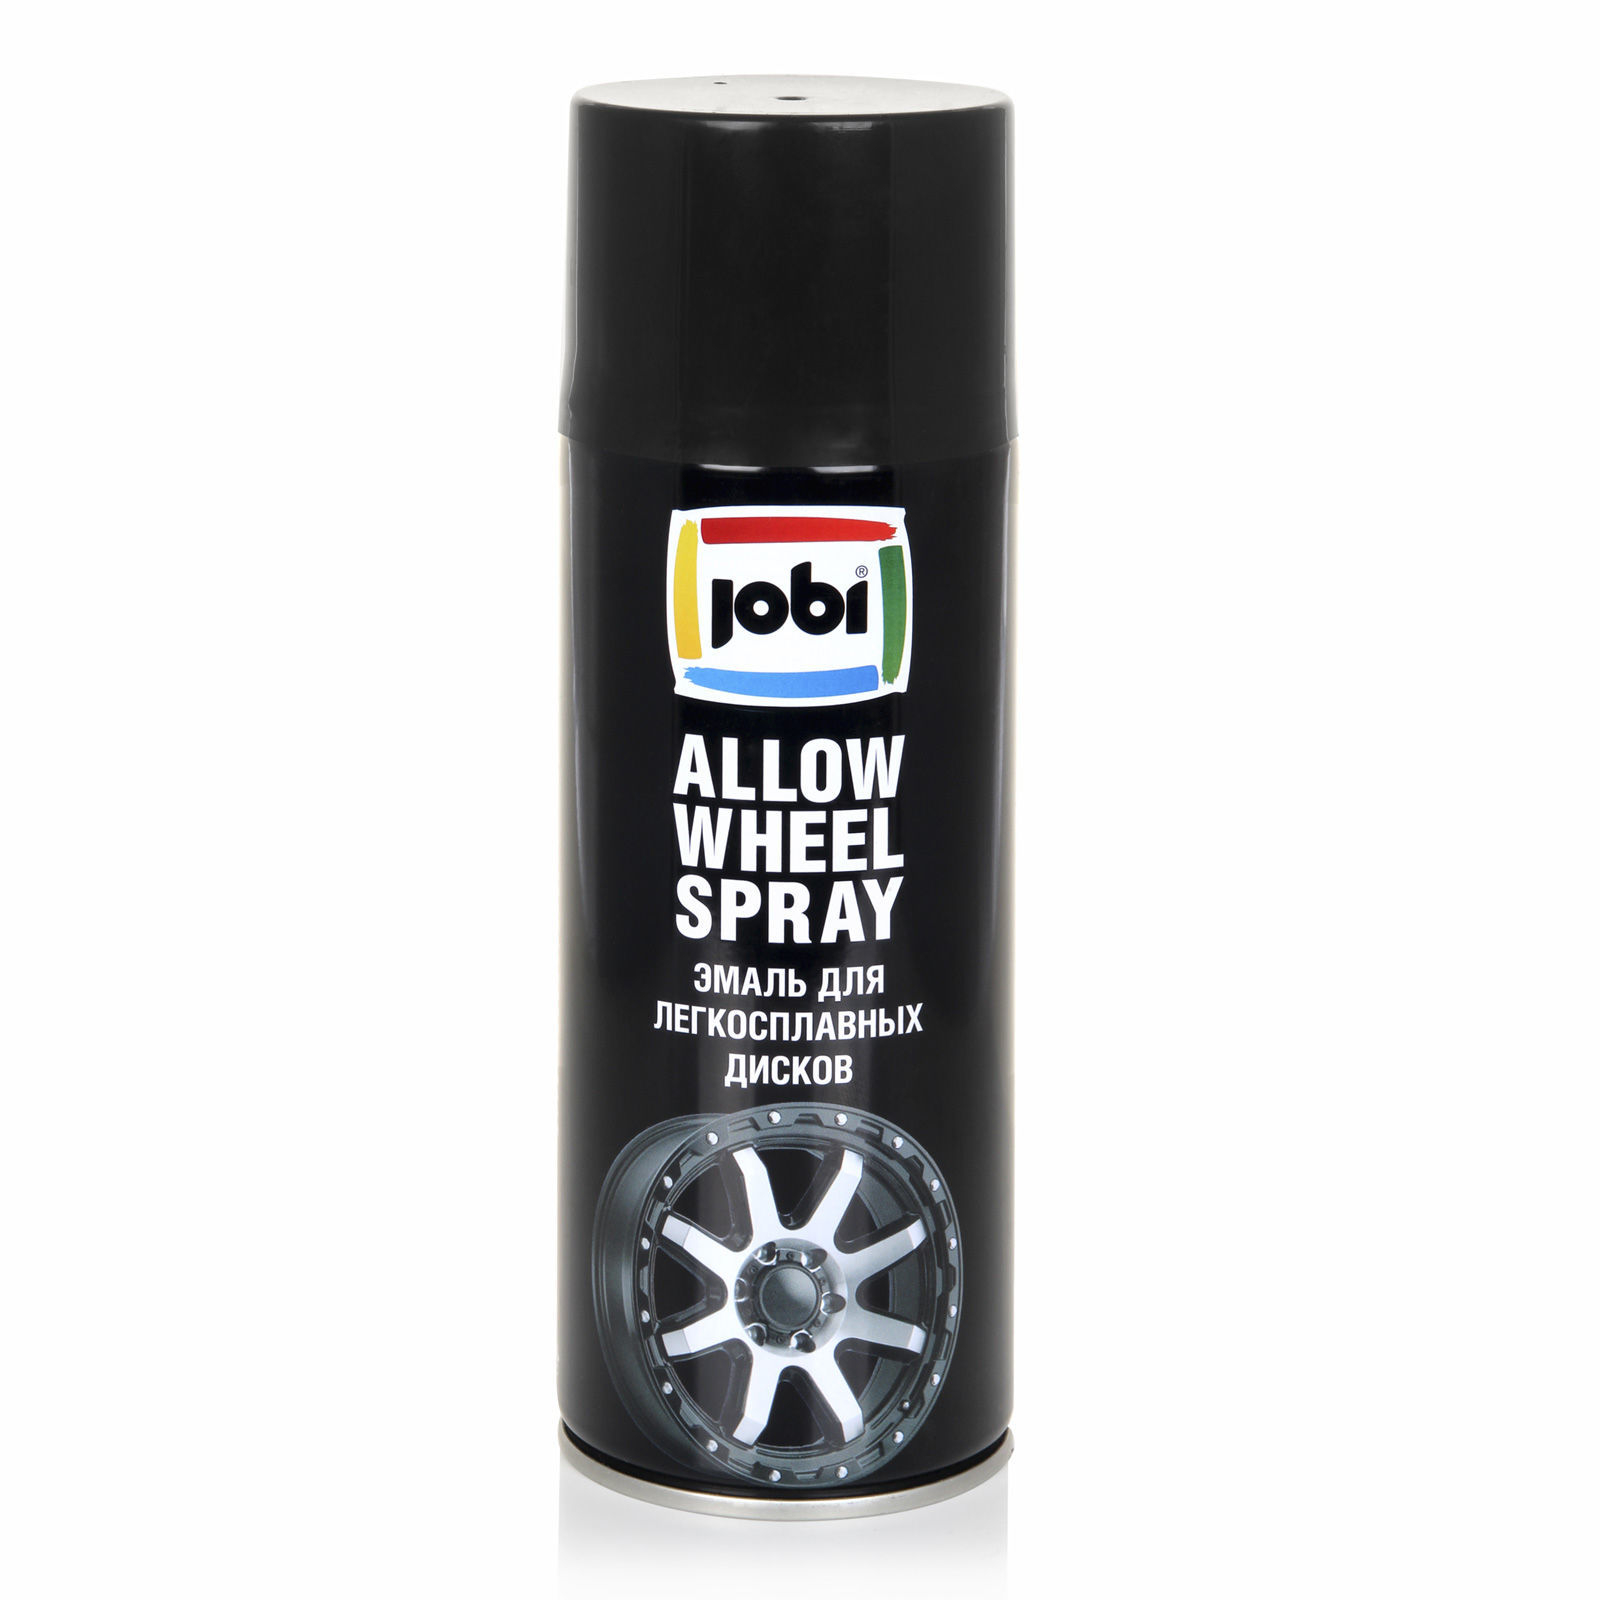 Эмаль Jobi Allow Wheel Spray для легкосплавных дисков, черный, аэрозоль, 32276, 520 мл